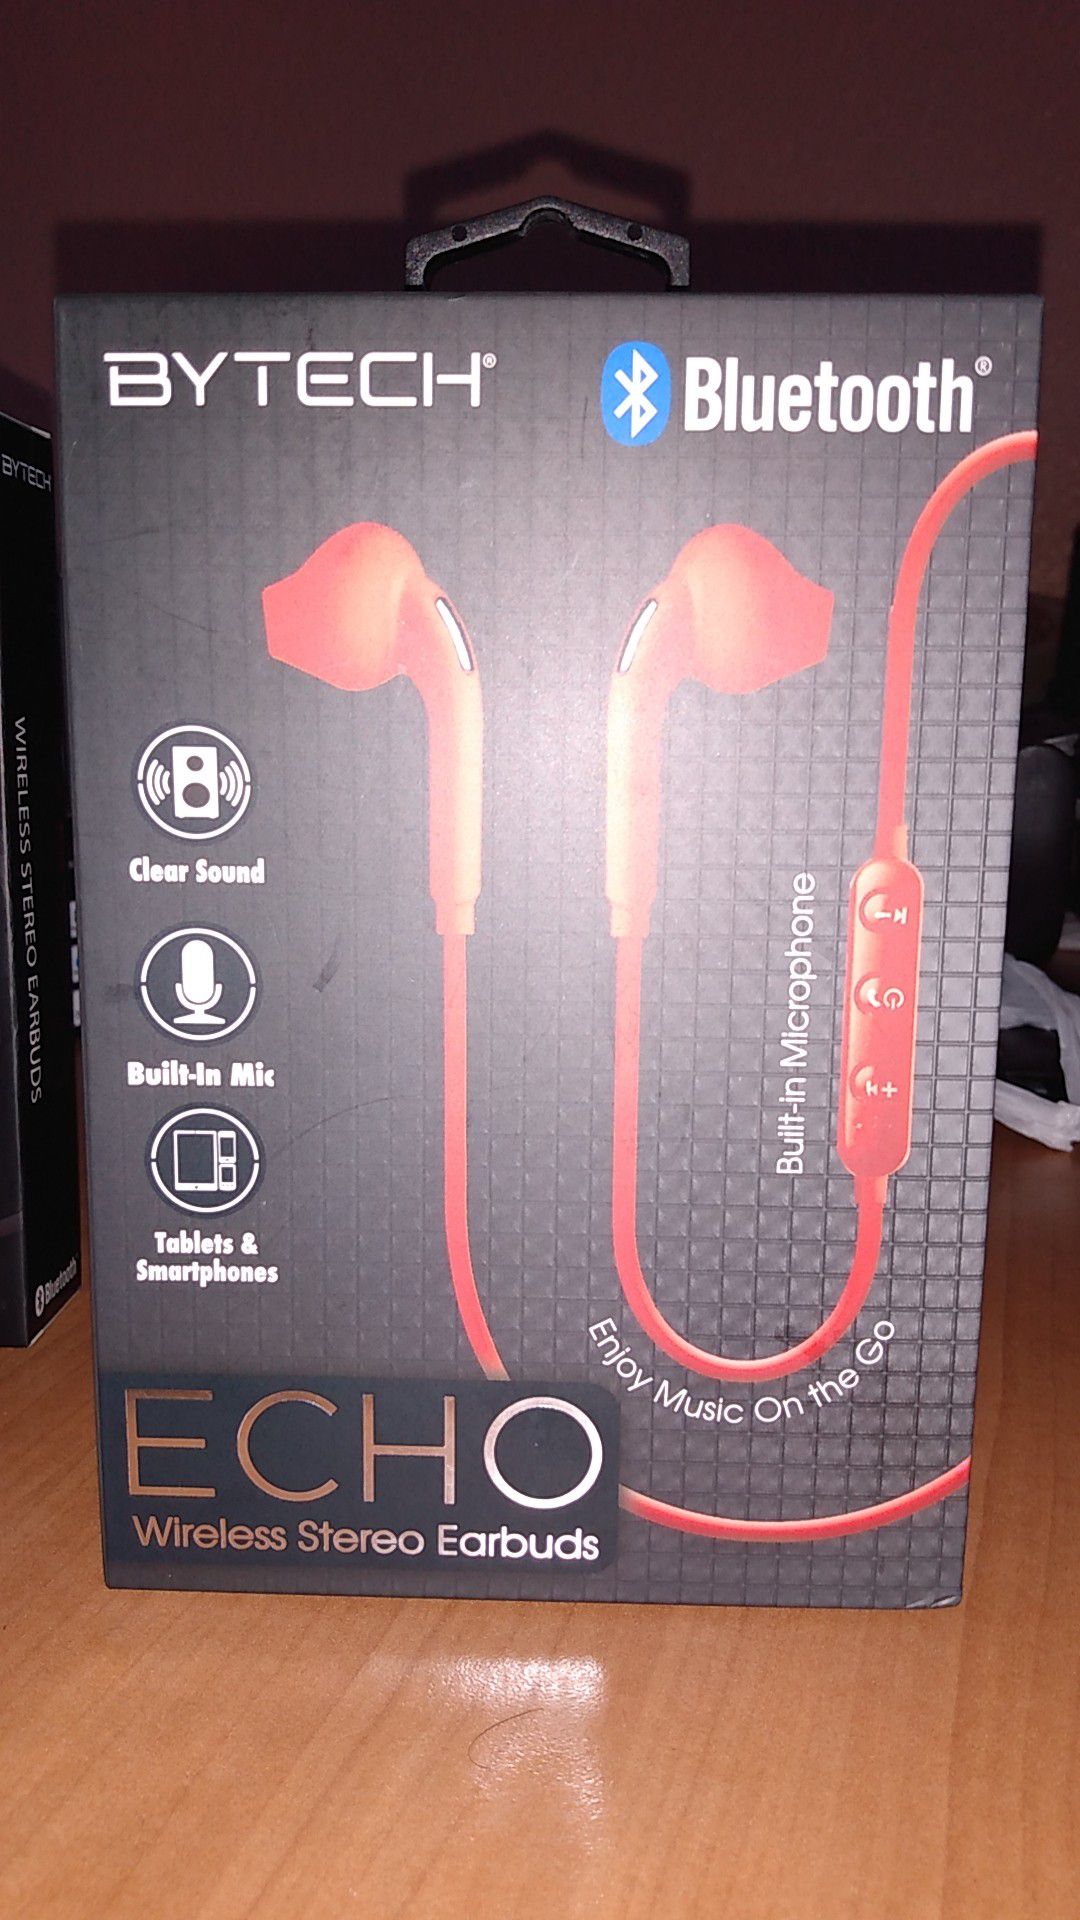 Echo wireless stereo earbuds